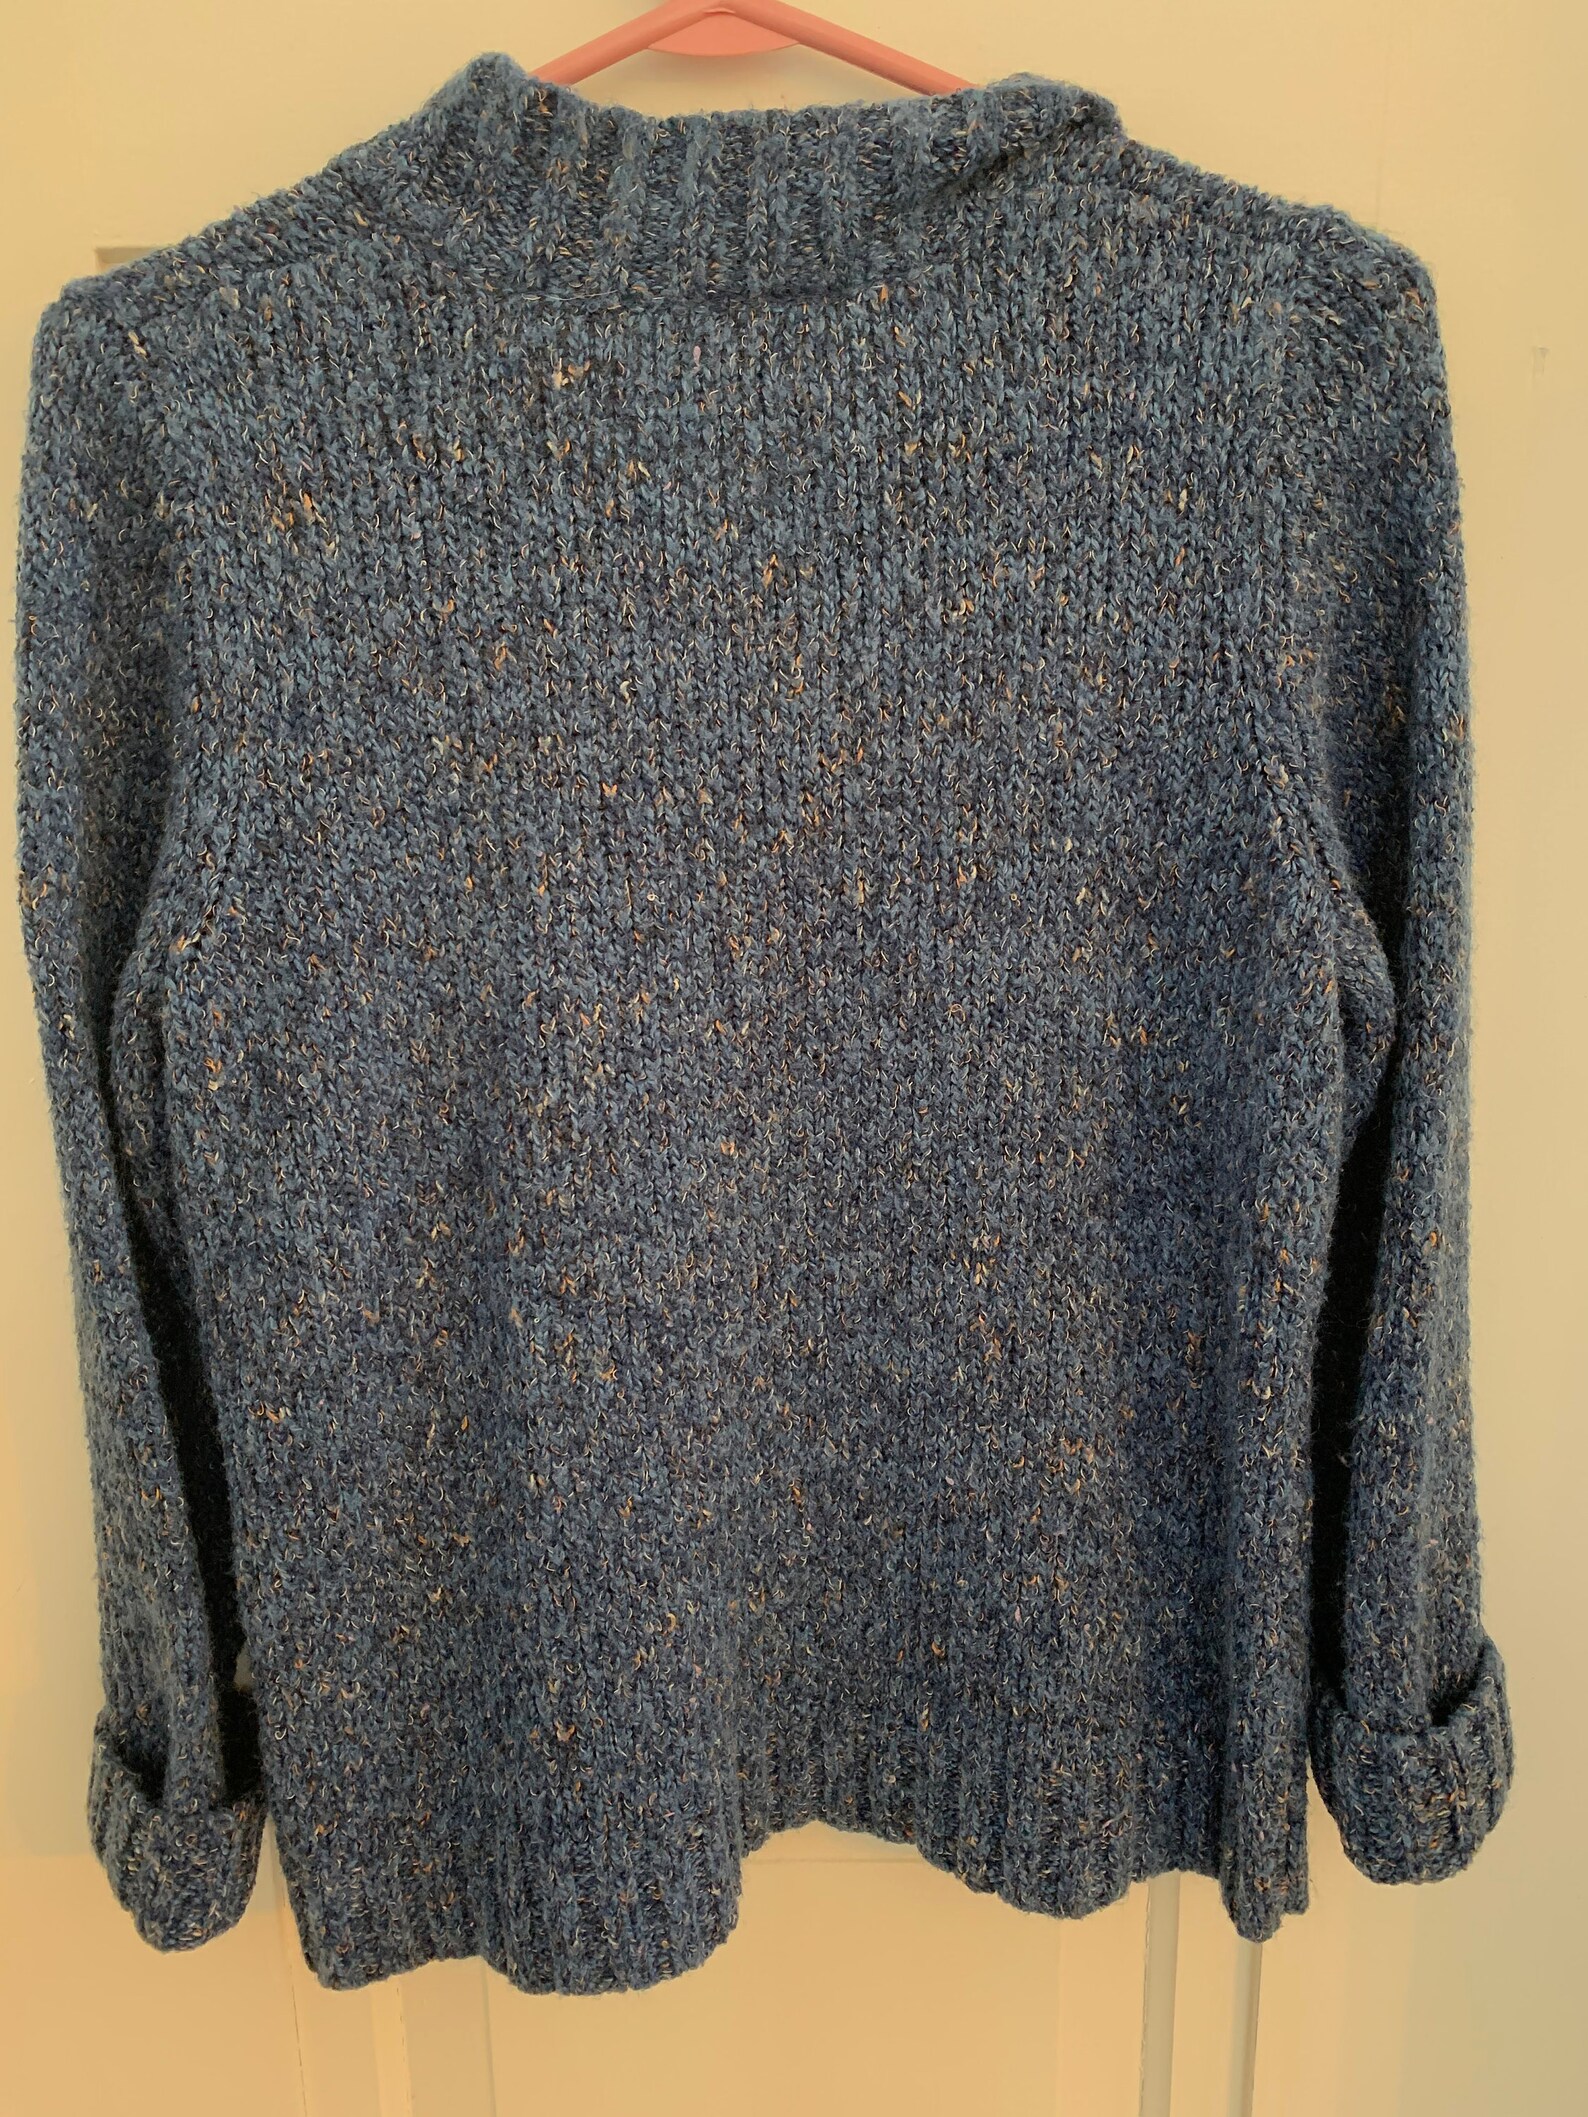 Vintage Croft & Barrow Cozy Sweater | Etsy